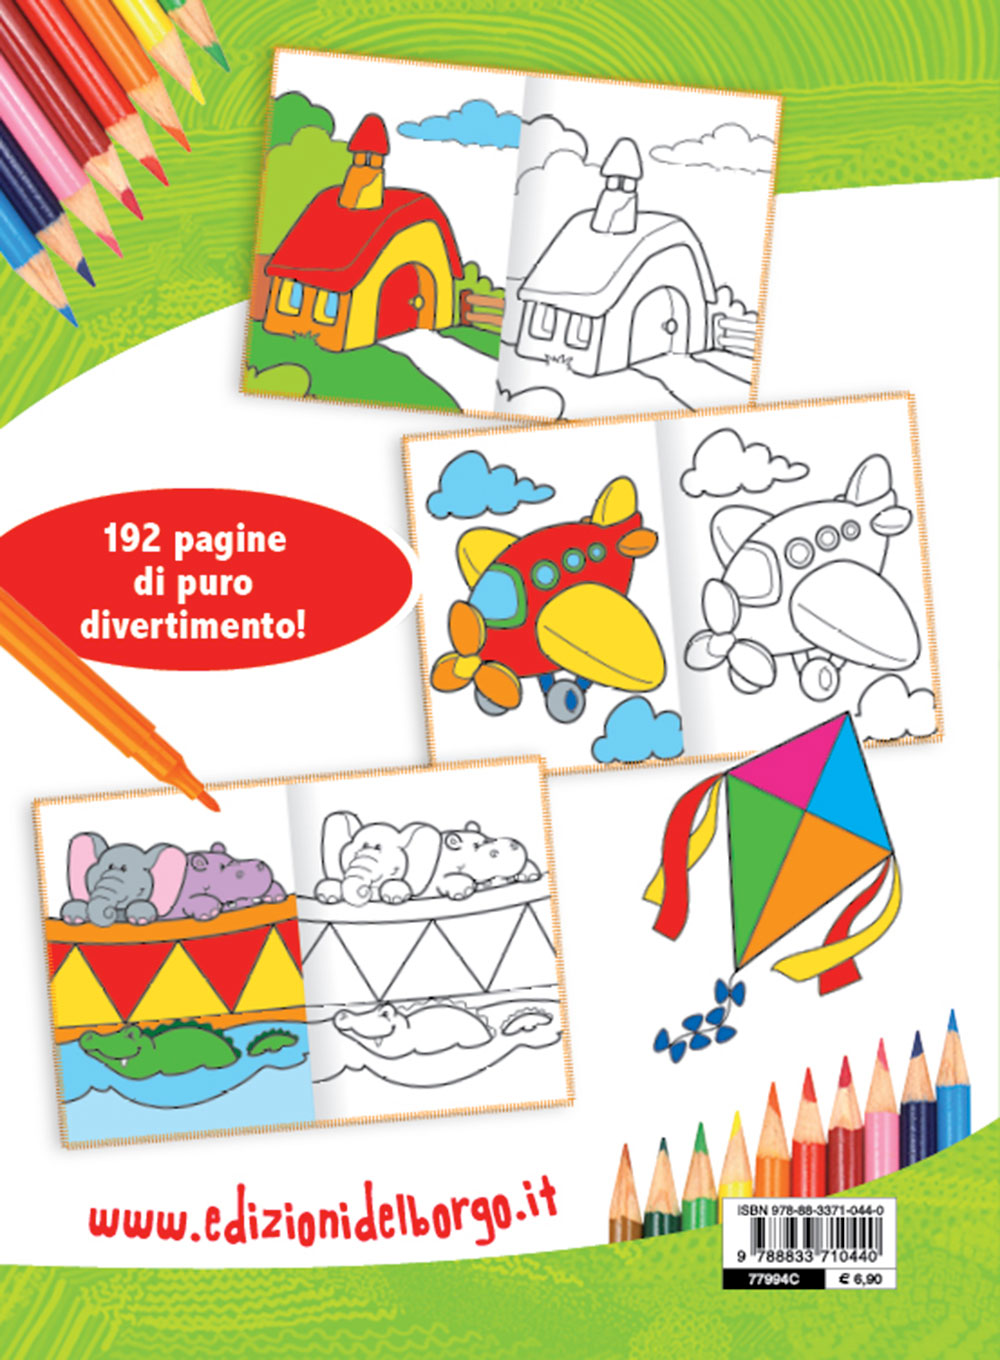 Il mio album da colorare::Animali, circo, stagioni, fiabe, giocattoli e  tanto altro! - 192 pagine per divertirsi colorando!